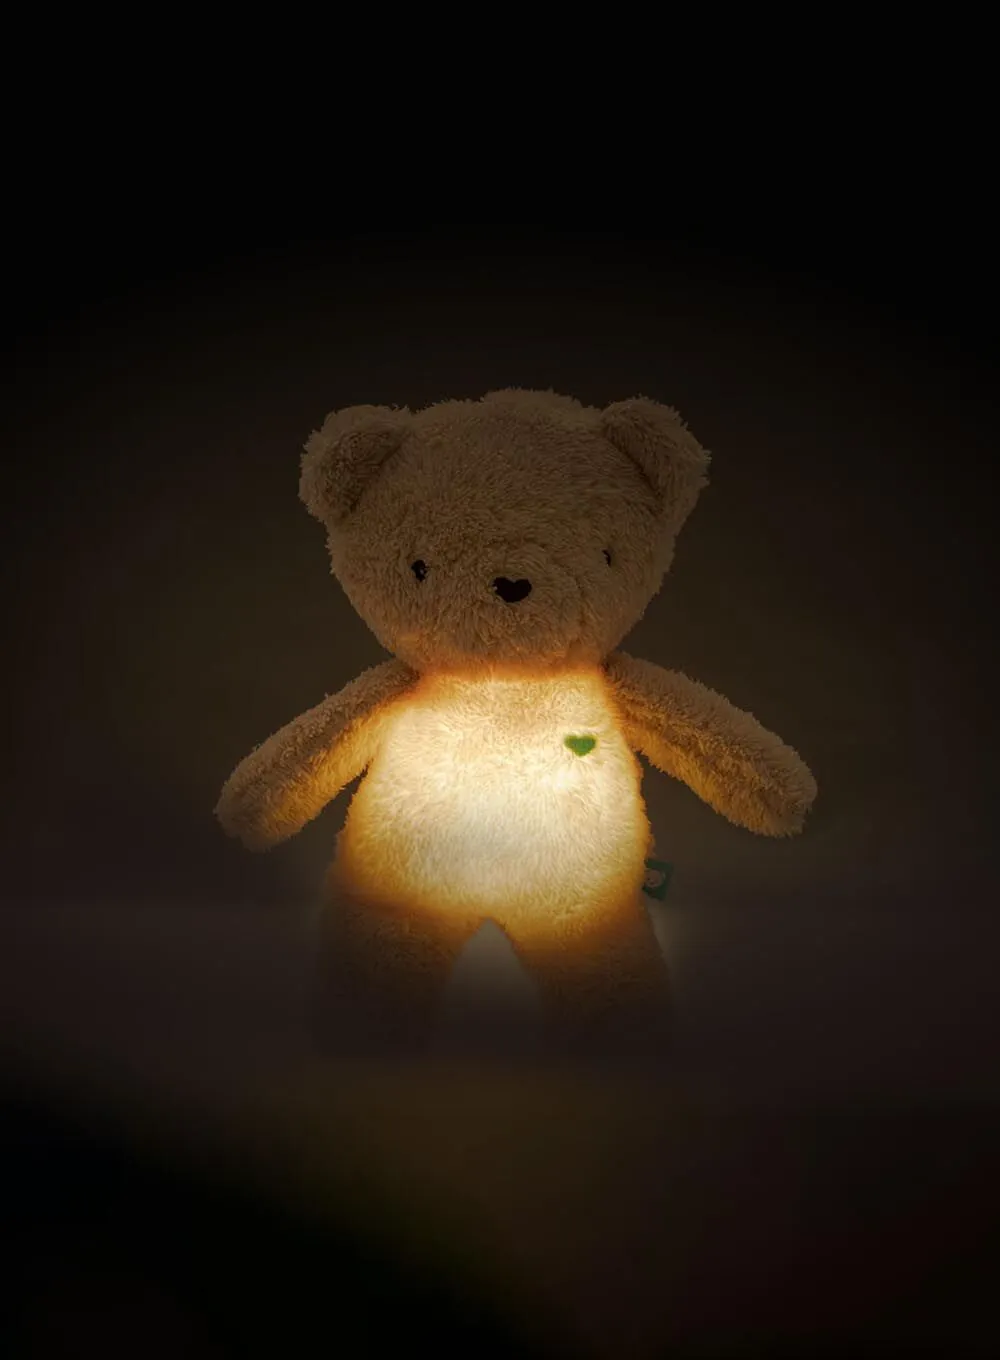 myHummy TEDDY BEAR with lamp